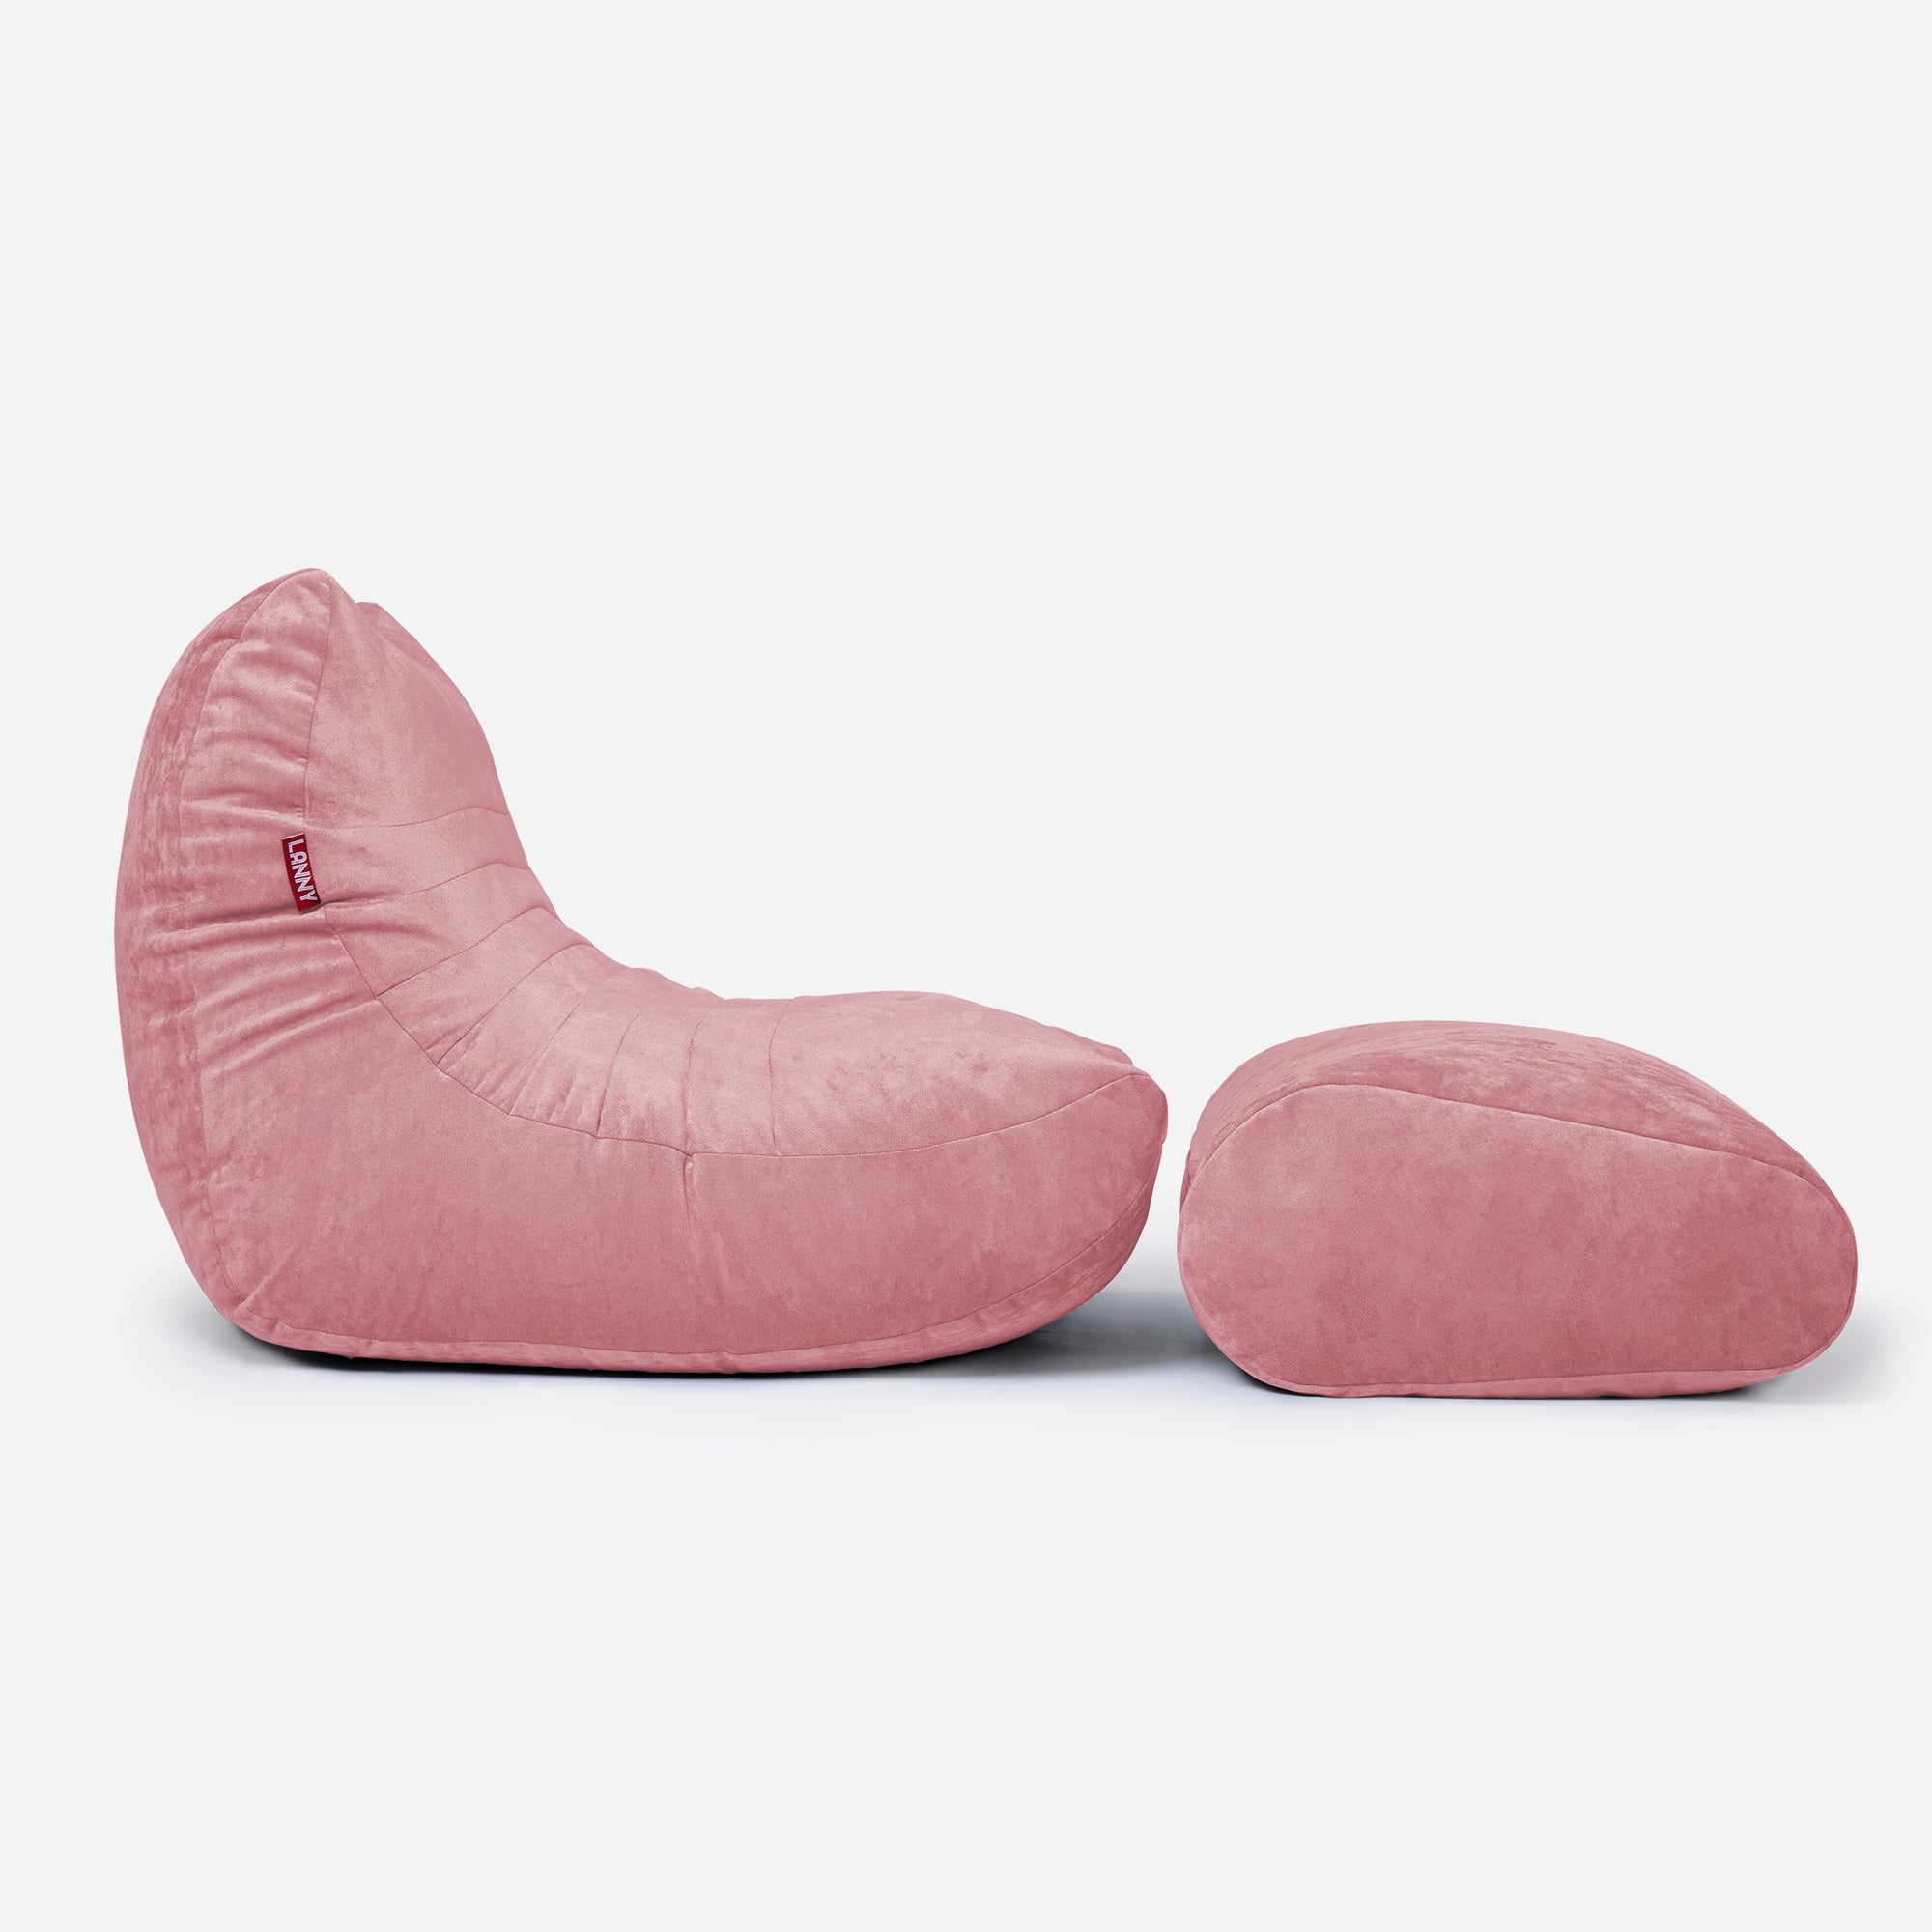 Curvy Aldo Pink Bean Bag Chair